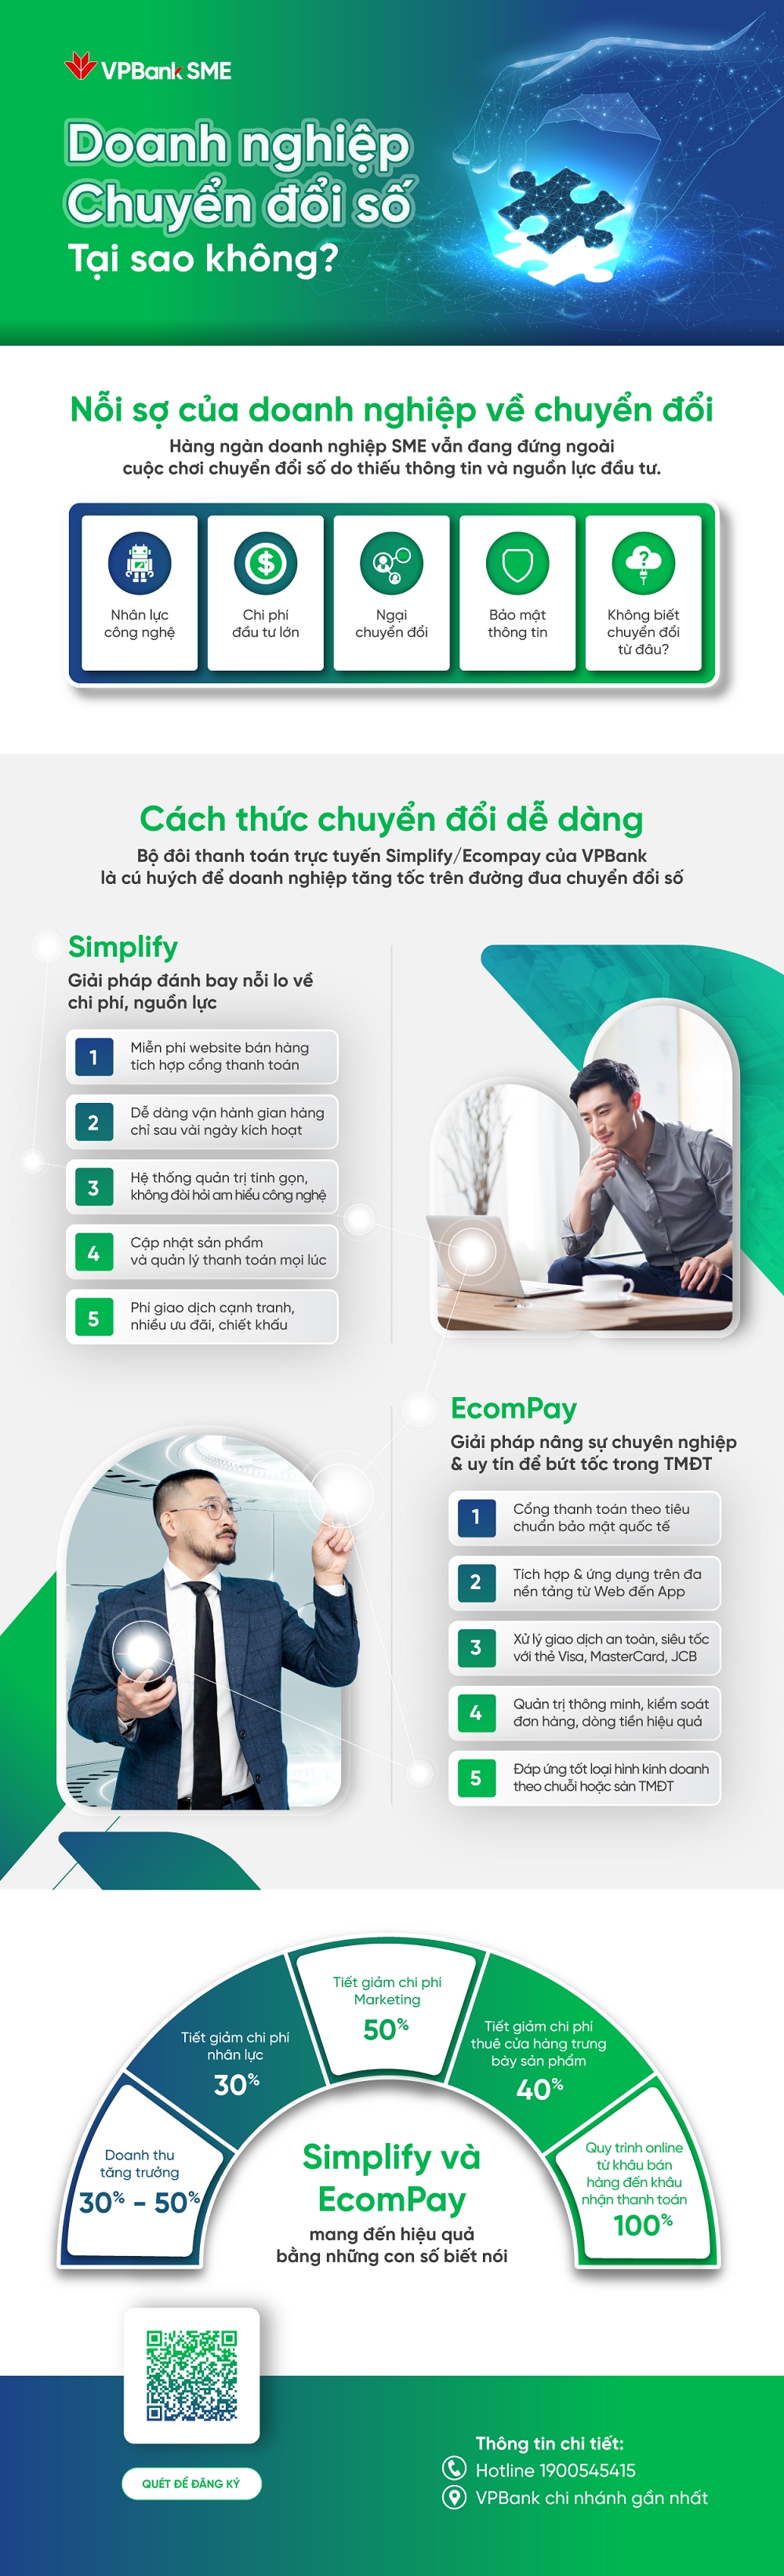 Simplify/Ecompay- Tháo gỡ rào cản chuyển đổi số doanh nghiệp